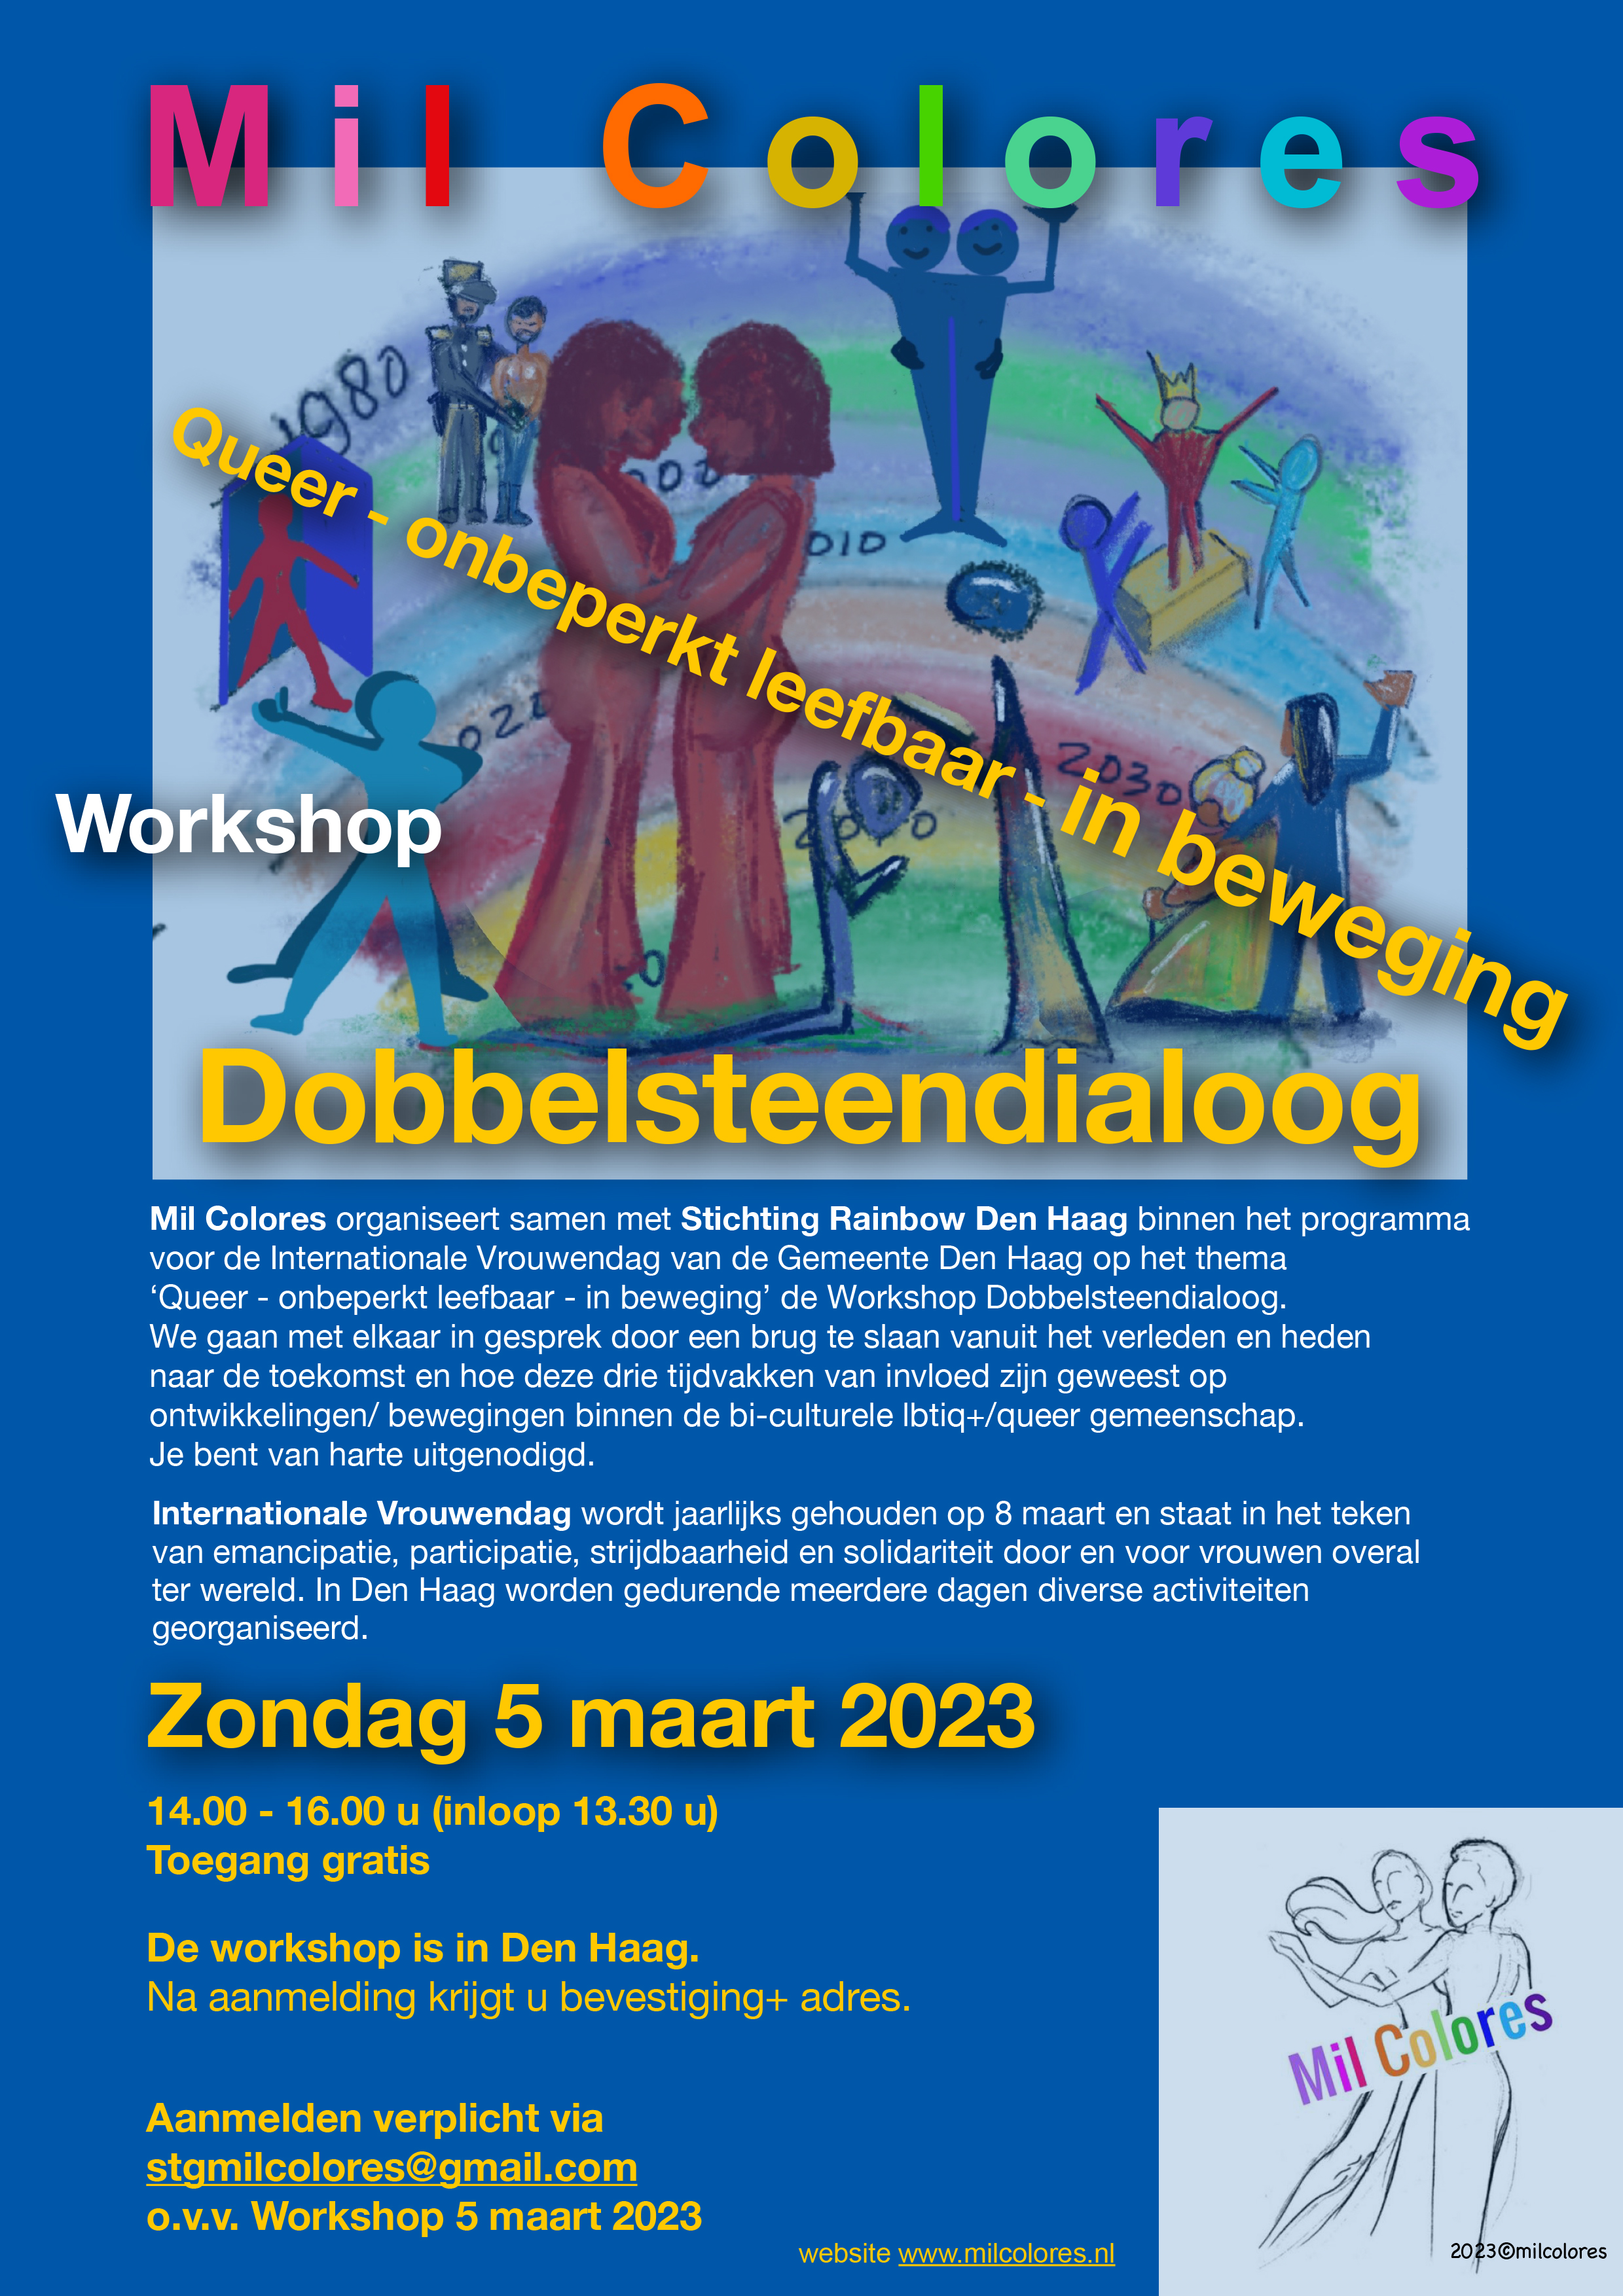 Flyer Mil Colores Workshop Dobbelsteendialoog: Queer -onbeperkt leefbaar- in beweging. Illustraties hierop: een kleurentekening met veel vrouwen erin. Een koppel is uitgelicht en staat heel dicht bij elkaar. Rechtsonder staat het logo van Mil Colores. De flyer staat stampvol met tekst. Zondag 5 maart 2023, 14.00 - 16.00 u (inloop 13.30 u). Toegang gratis. De workshop is in Den Haag. Na aanmelding krijgt u bevestiging + adres. (Betaald parkeren, bereikbaar met OV.) Aanmelden verplicht via stgmilcolores@gmail.com o.v.v. Workshop 5 maart 2023. Website www.milcolores.nl [Verder qua nog de verschrijving van de workshop en een toelichting op Internationale Vrouwendag.]